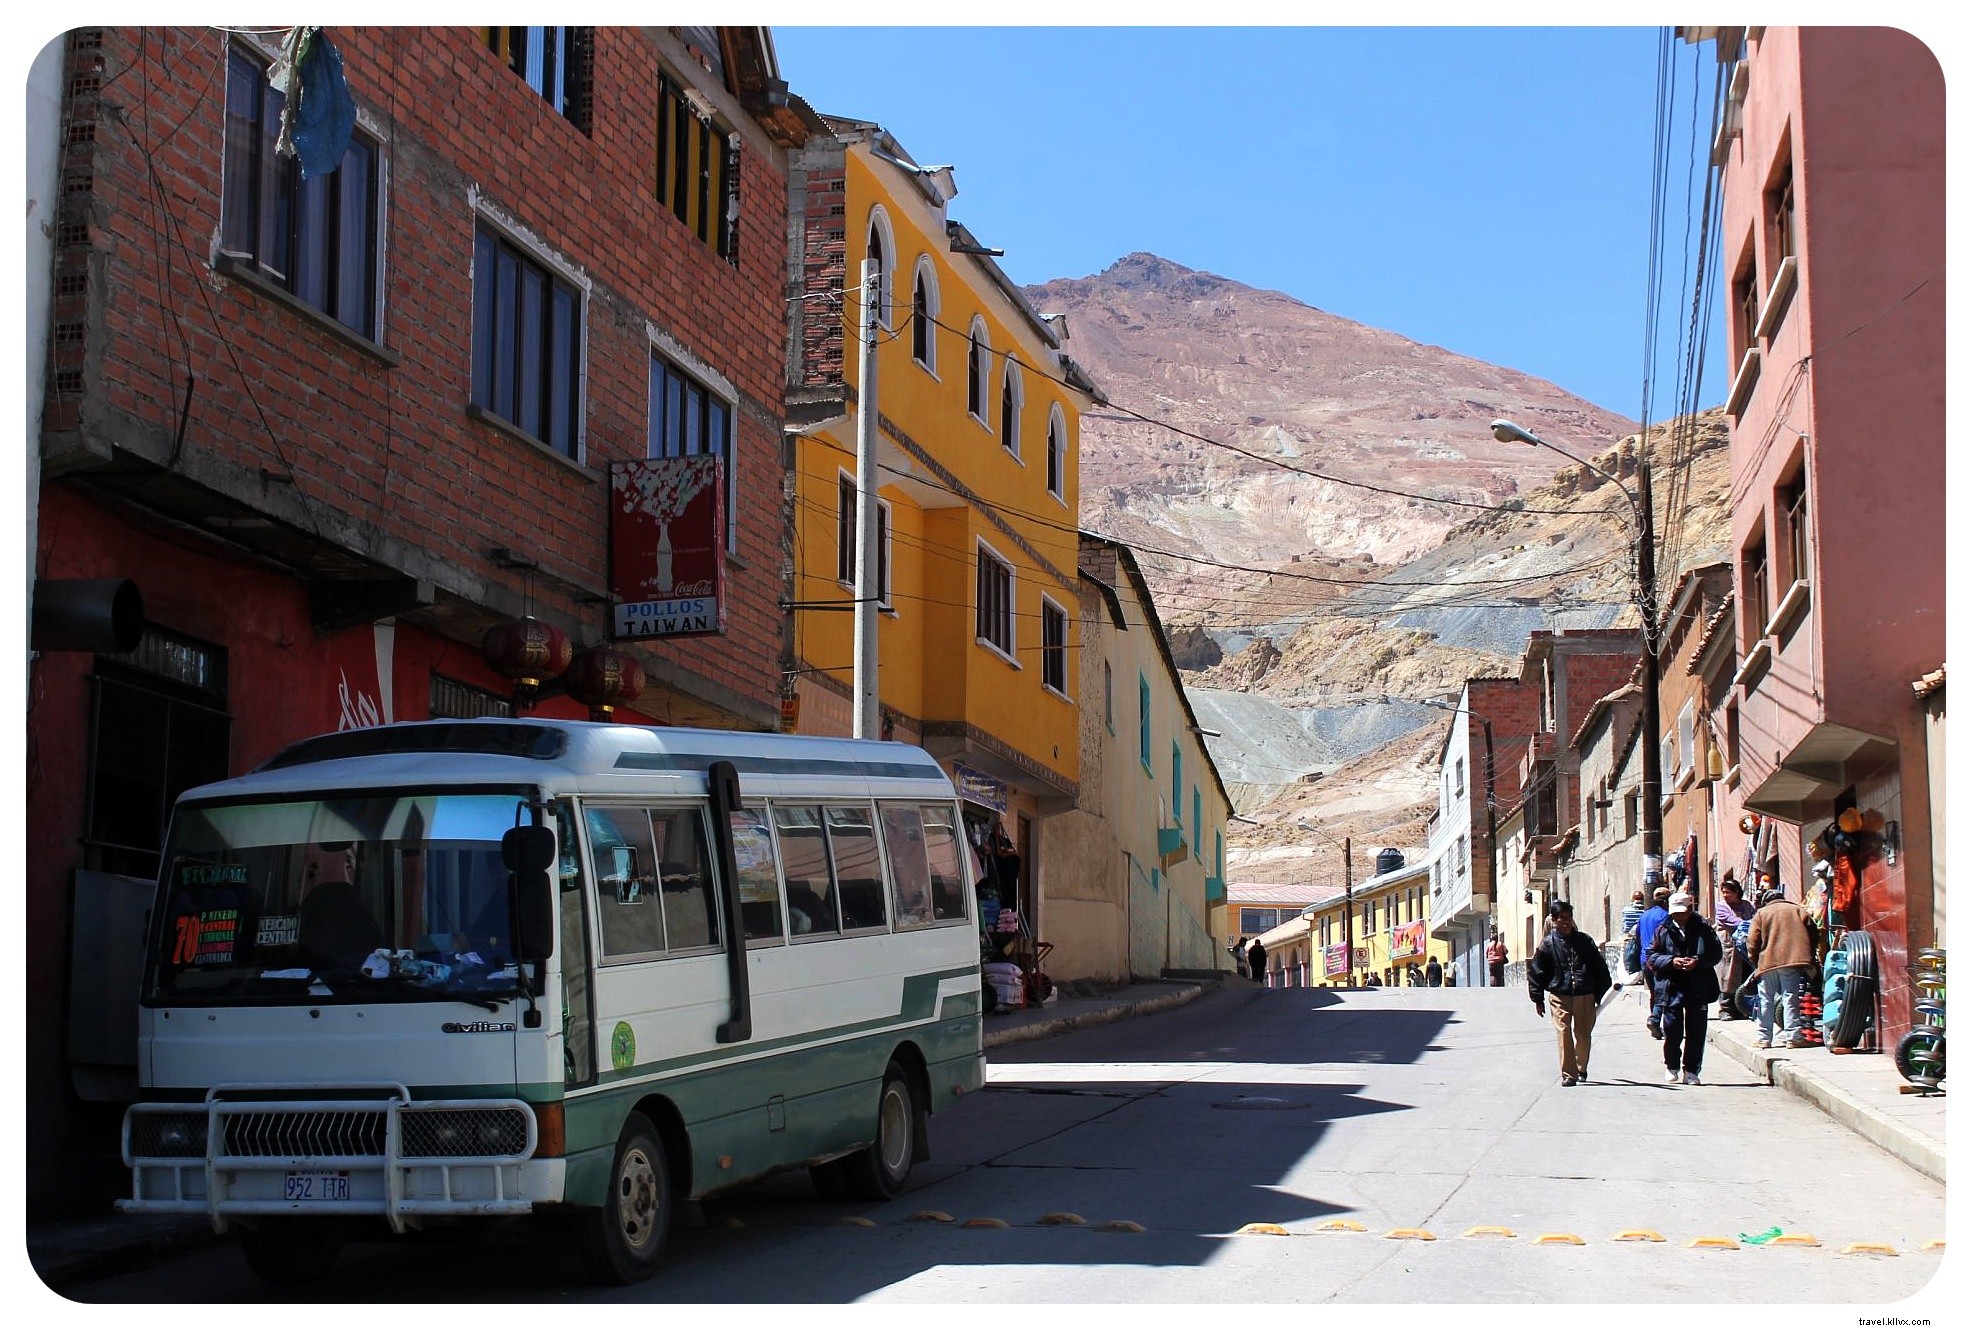 Il Cerro Rico della Bolivia – Rischiare la vita dentro la “montagna che mangia gli uomini”